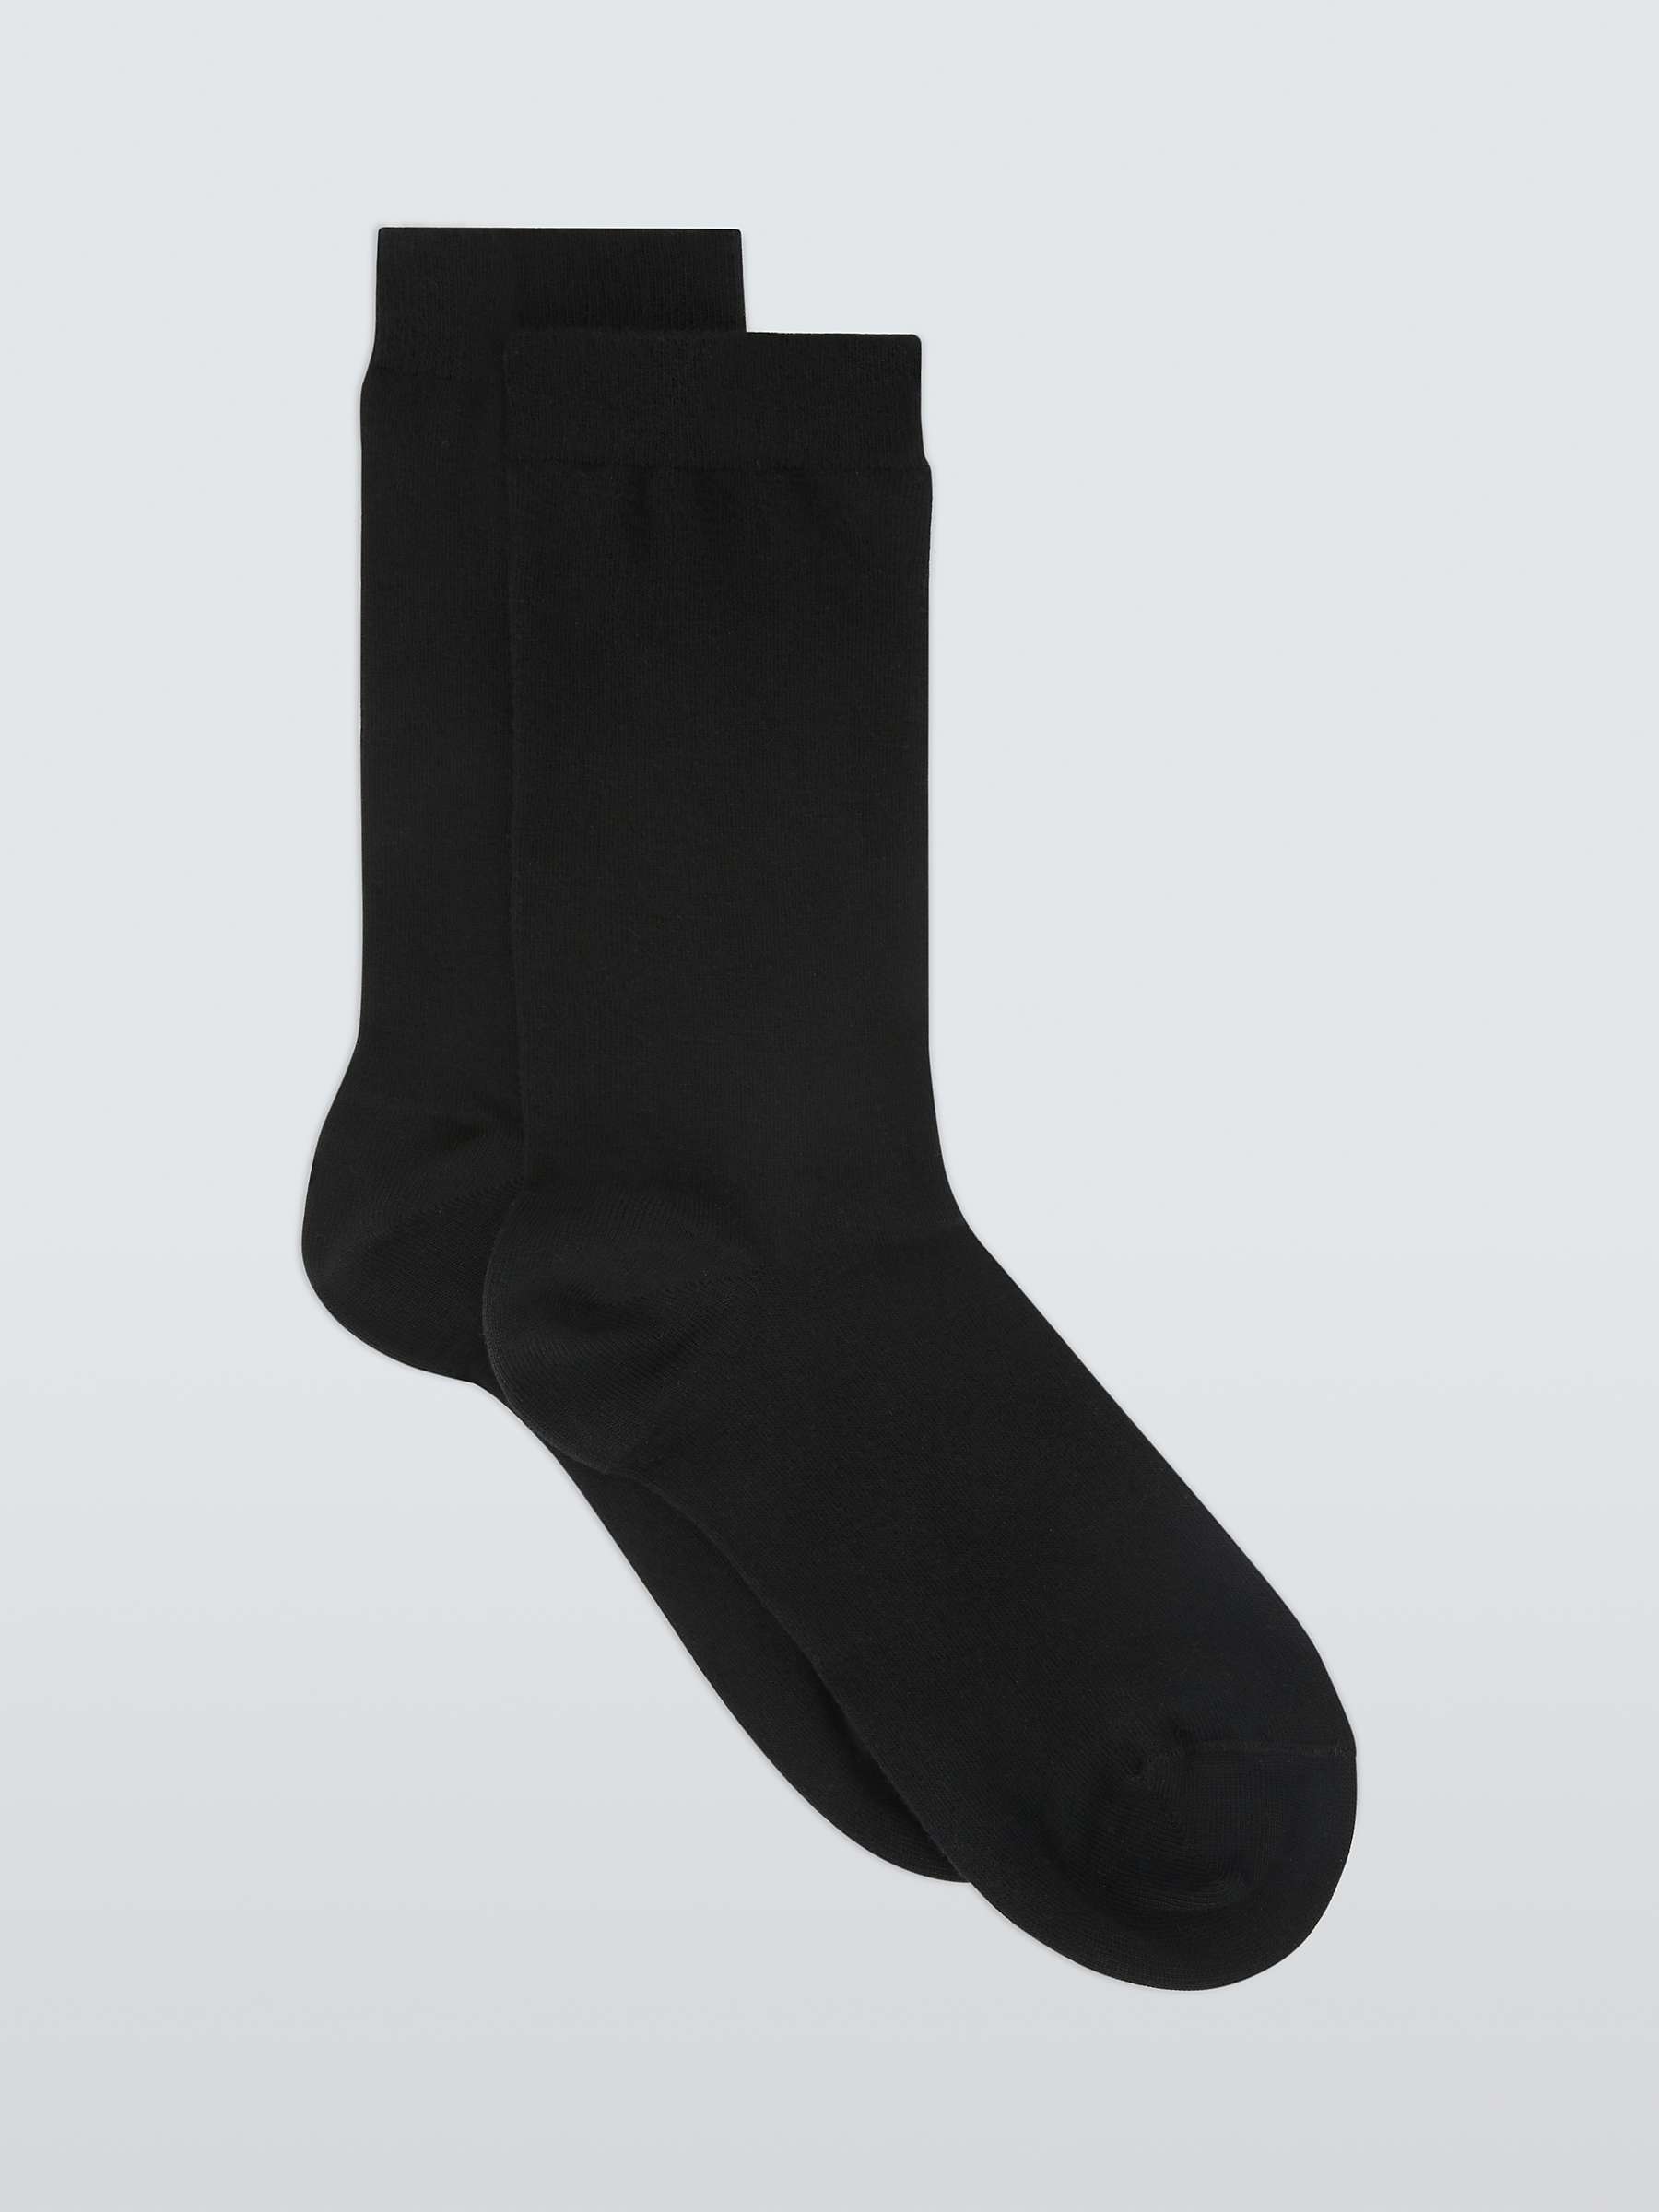 Buy John Lewis Cotton Cashmere Blend Ankle Socks Online at johnlewis.com